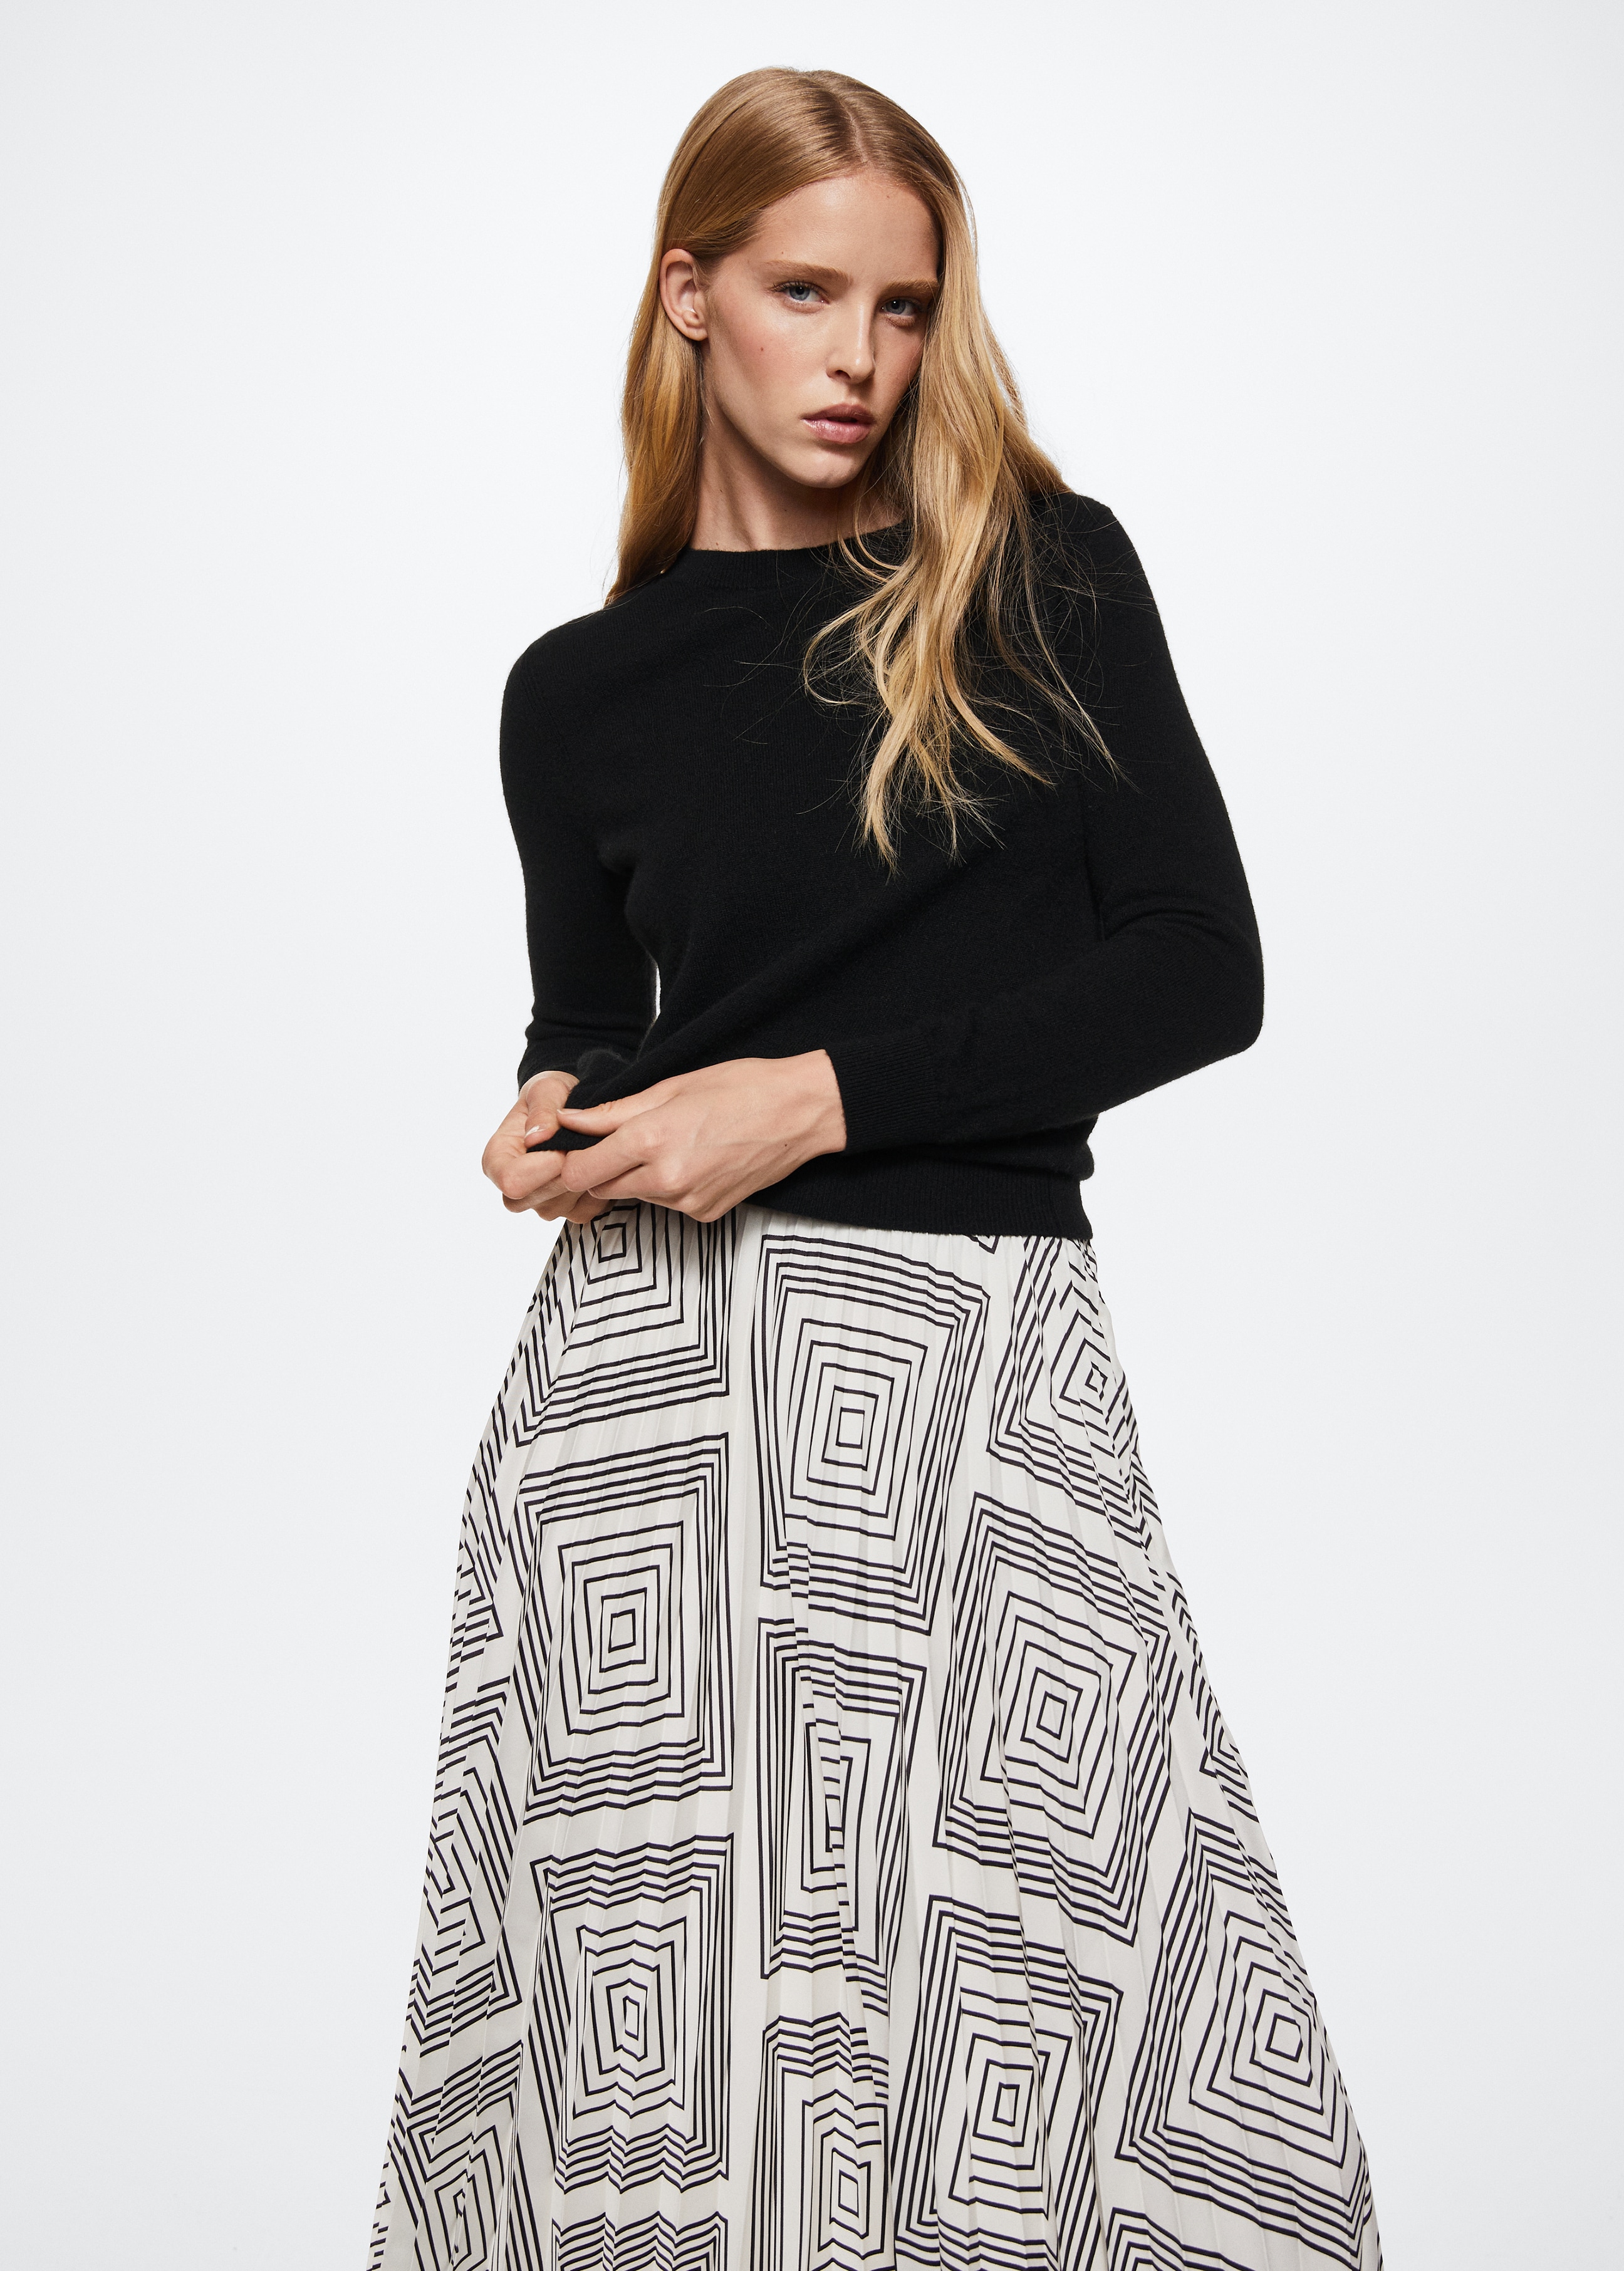 Geometric print pleated skirt - Medium plane